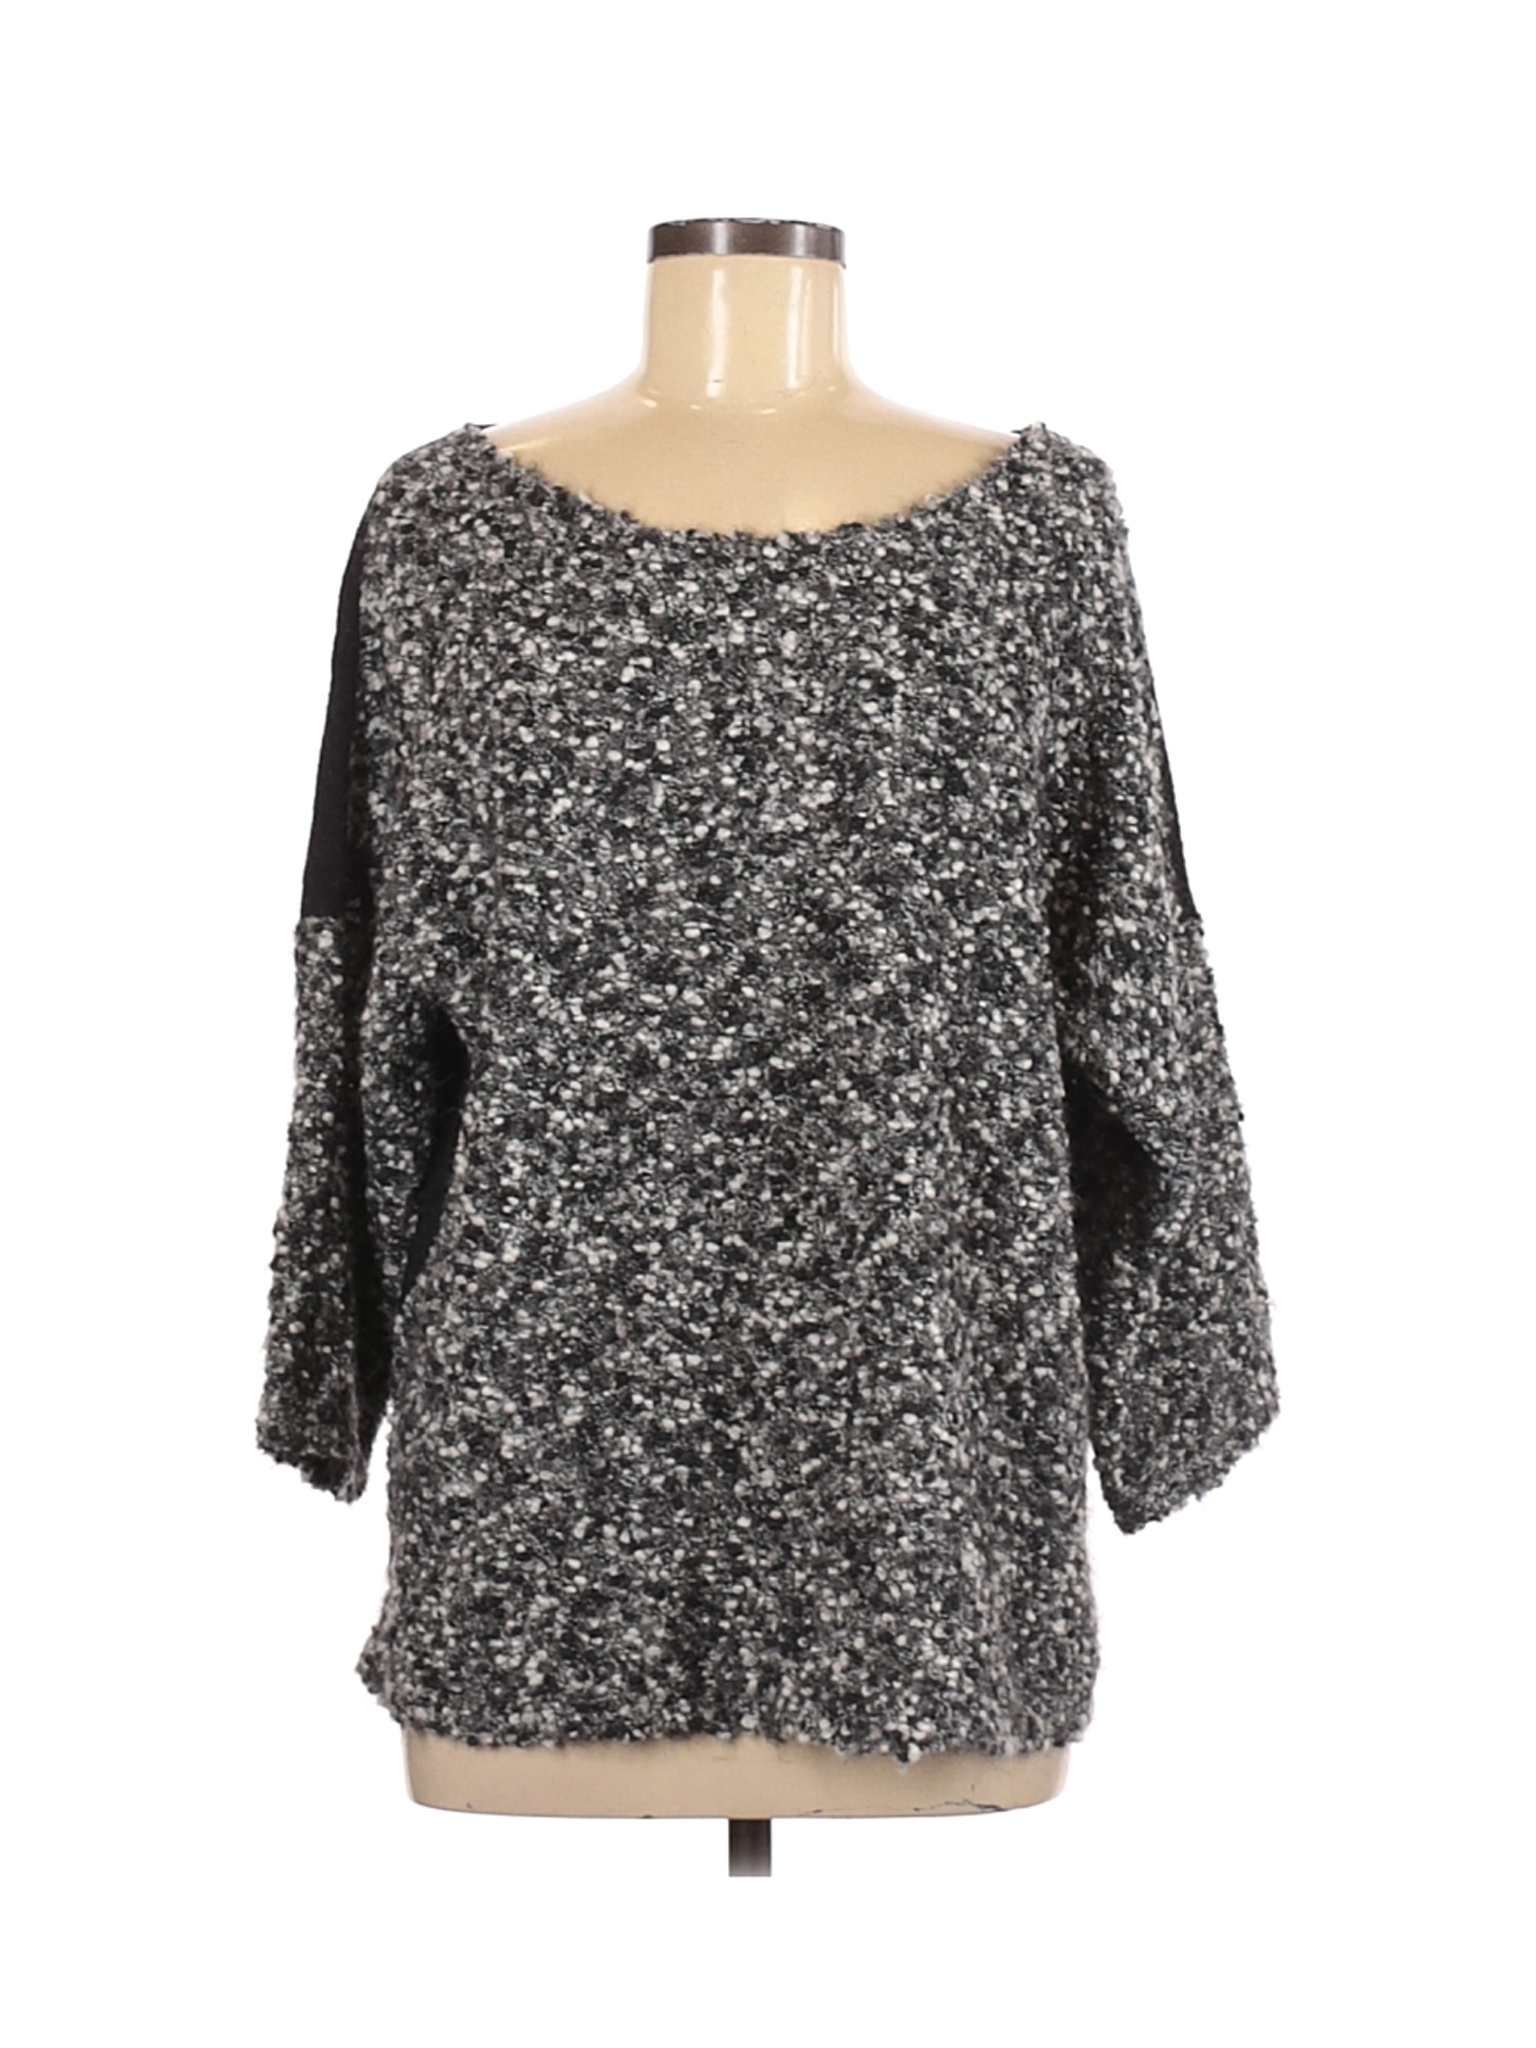 Eileen Fisher Women Gray Wool Pullover Sweater L | eBay